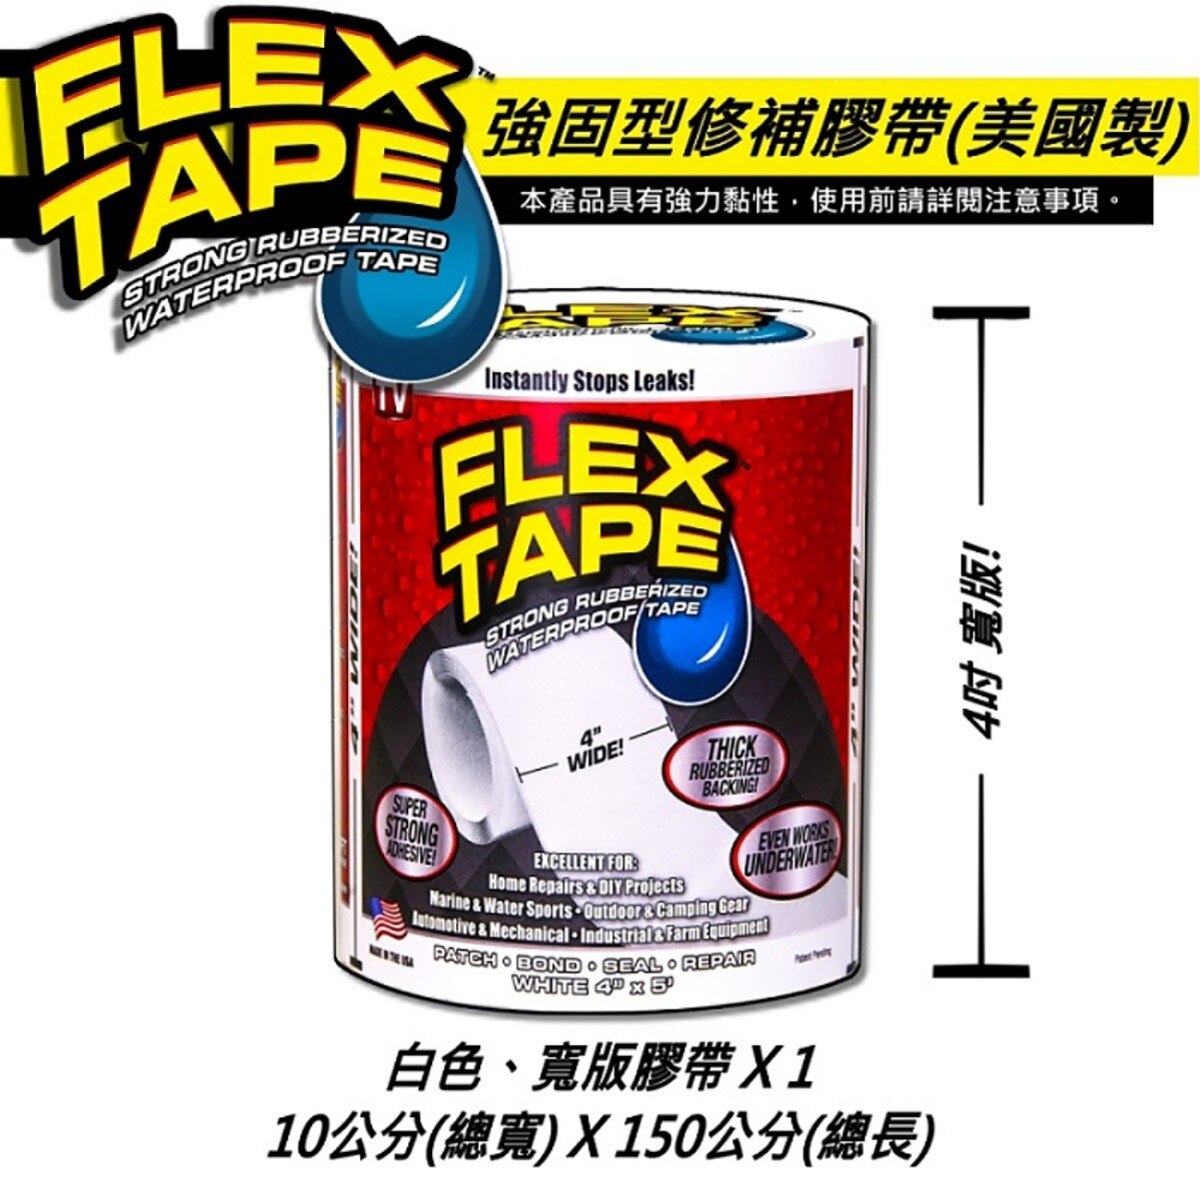 美國FLEX TAPE強固型修補膠帶 4吋寬版(白色)完全防水，水底下保有完整黏性，貼合止漏，瞬間密封，超強黏性適用多種表面材質。特殊橡膠材質，抗曬不劣化，抗擠壓、拉扯。白